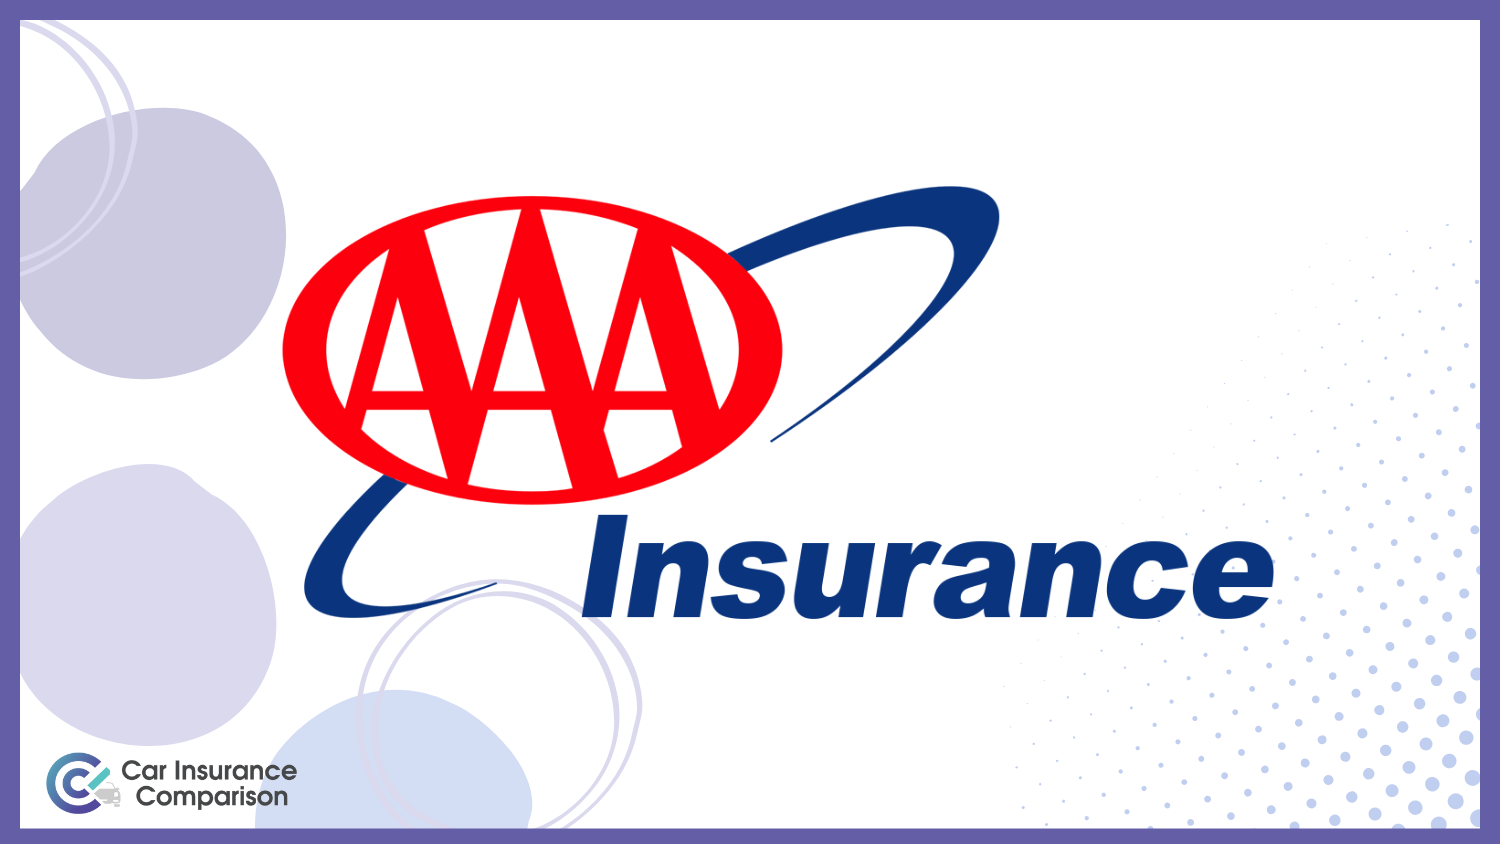 Best Shipt Car Insurance: AAA